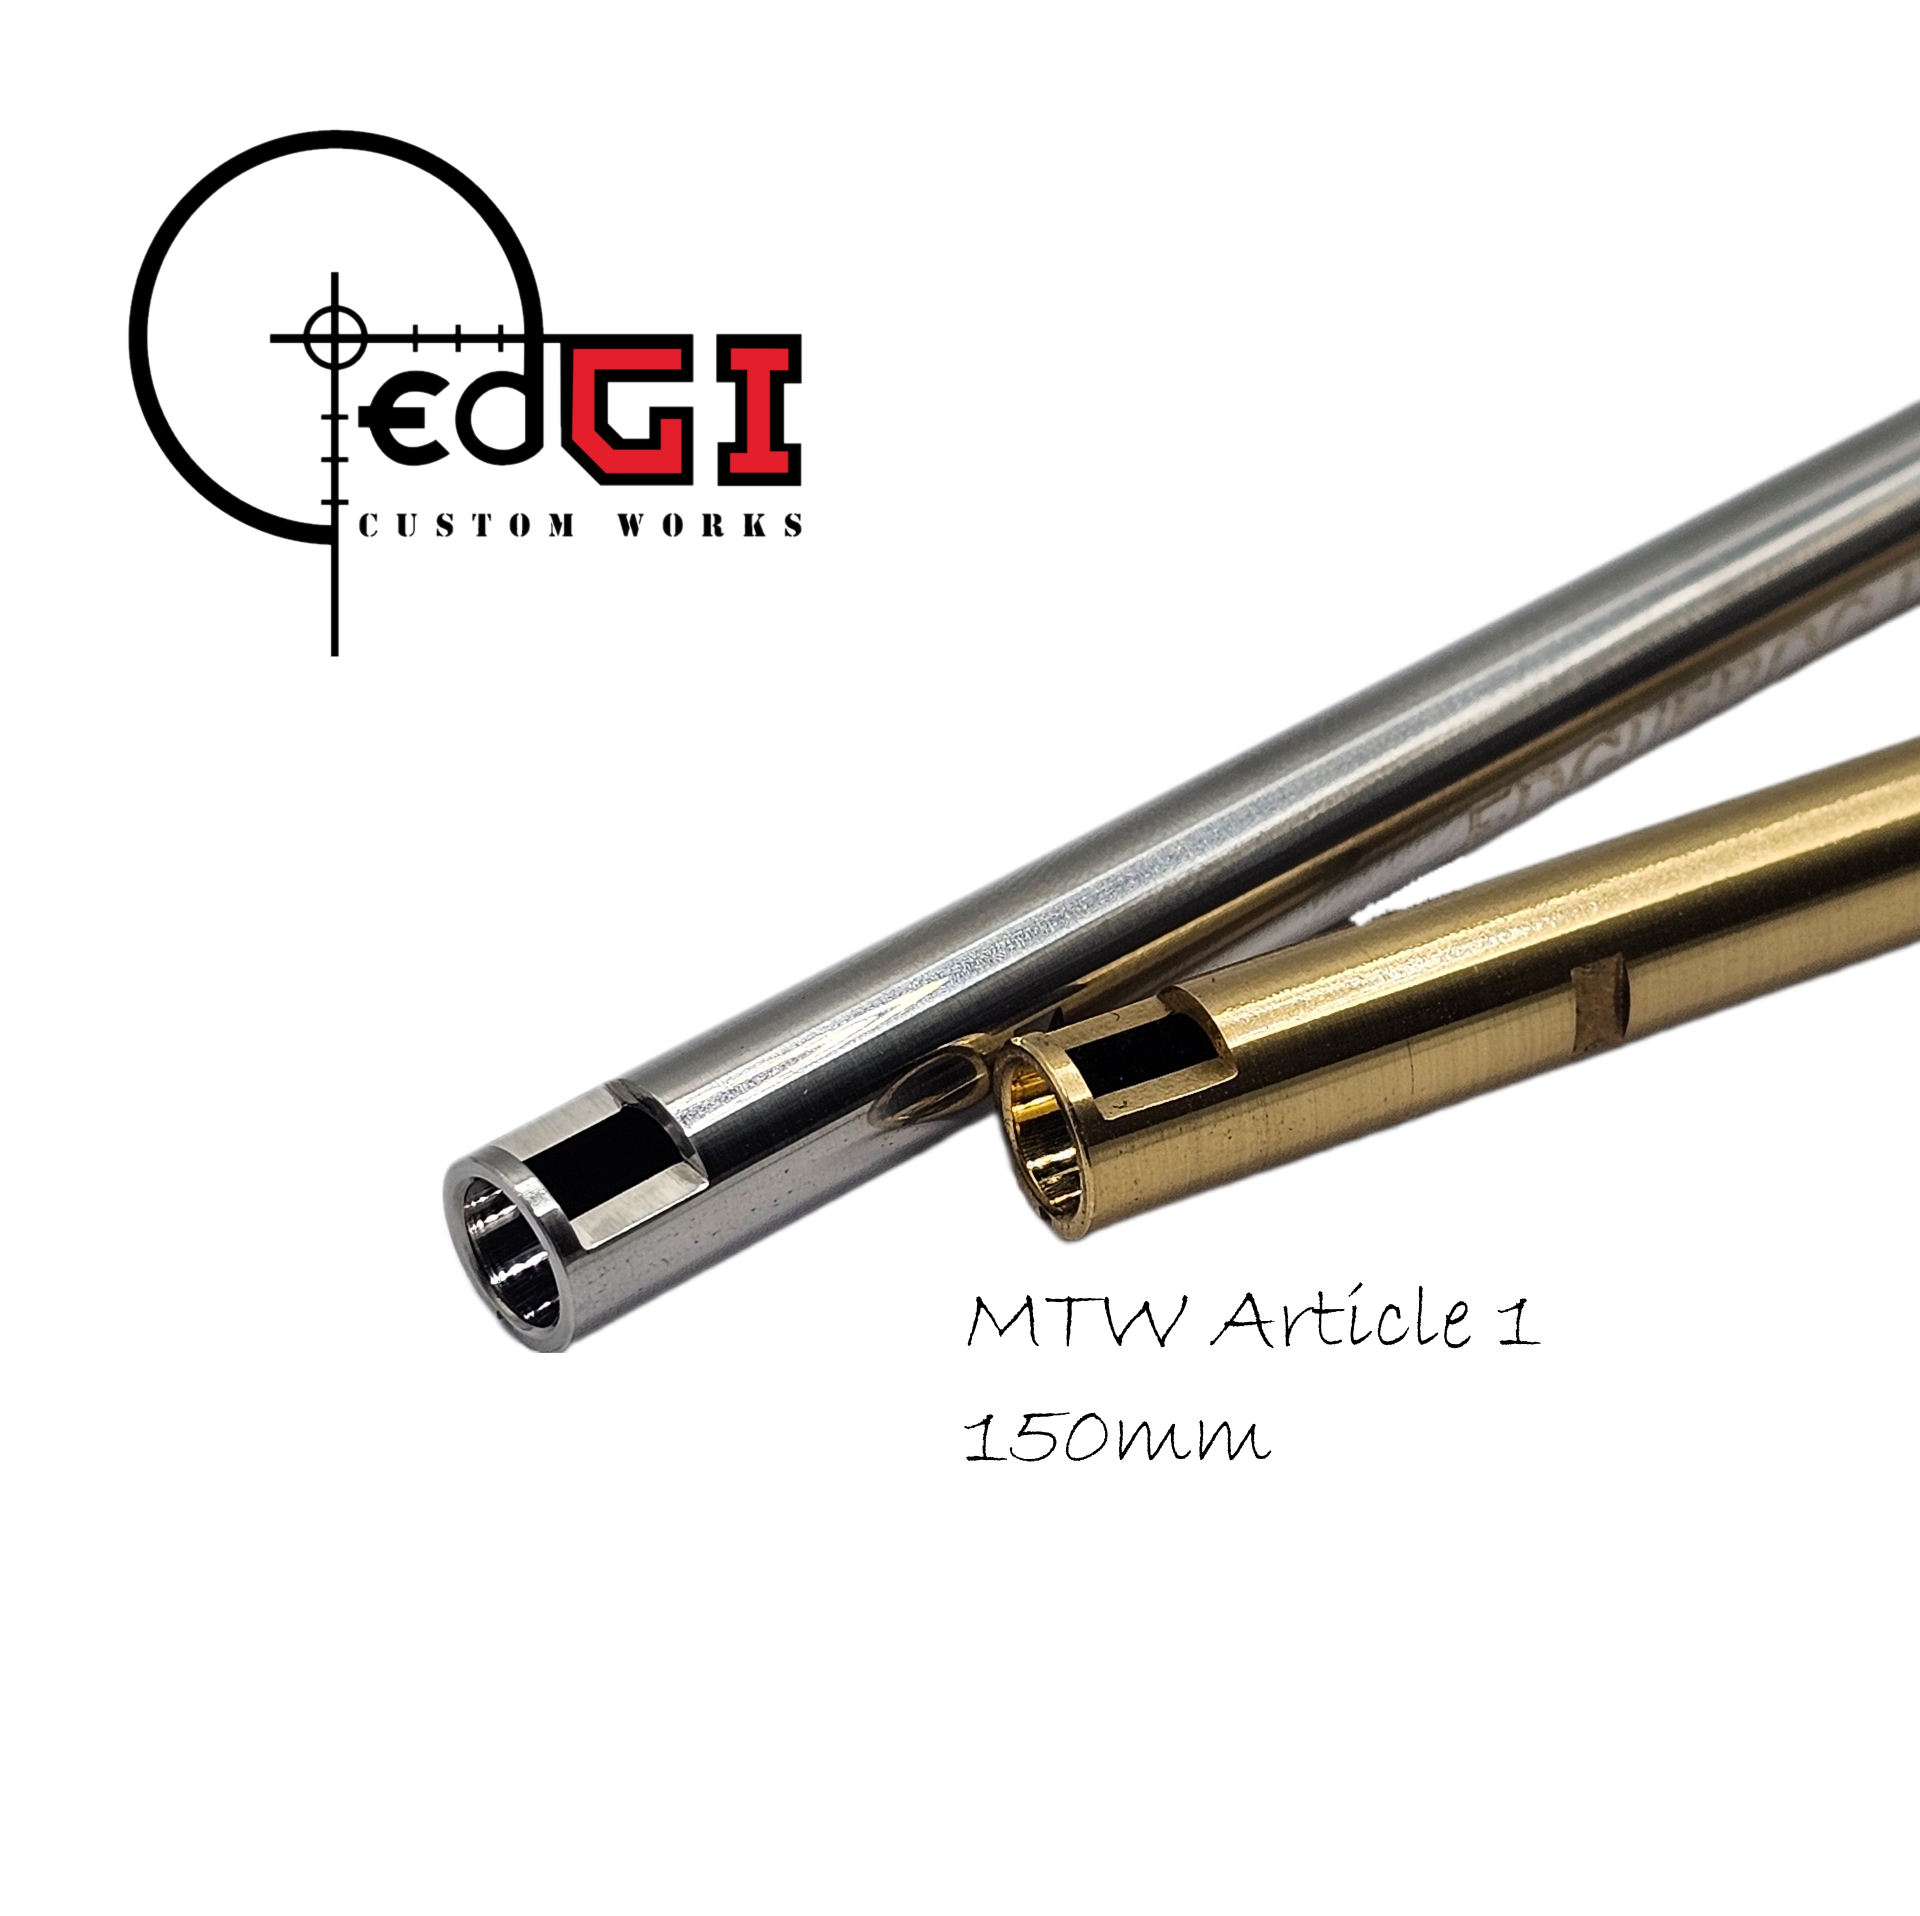 Edgi Custom Works - 150mm AEG Inner Barrel - MTW Article 1